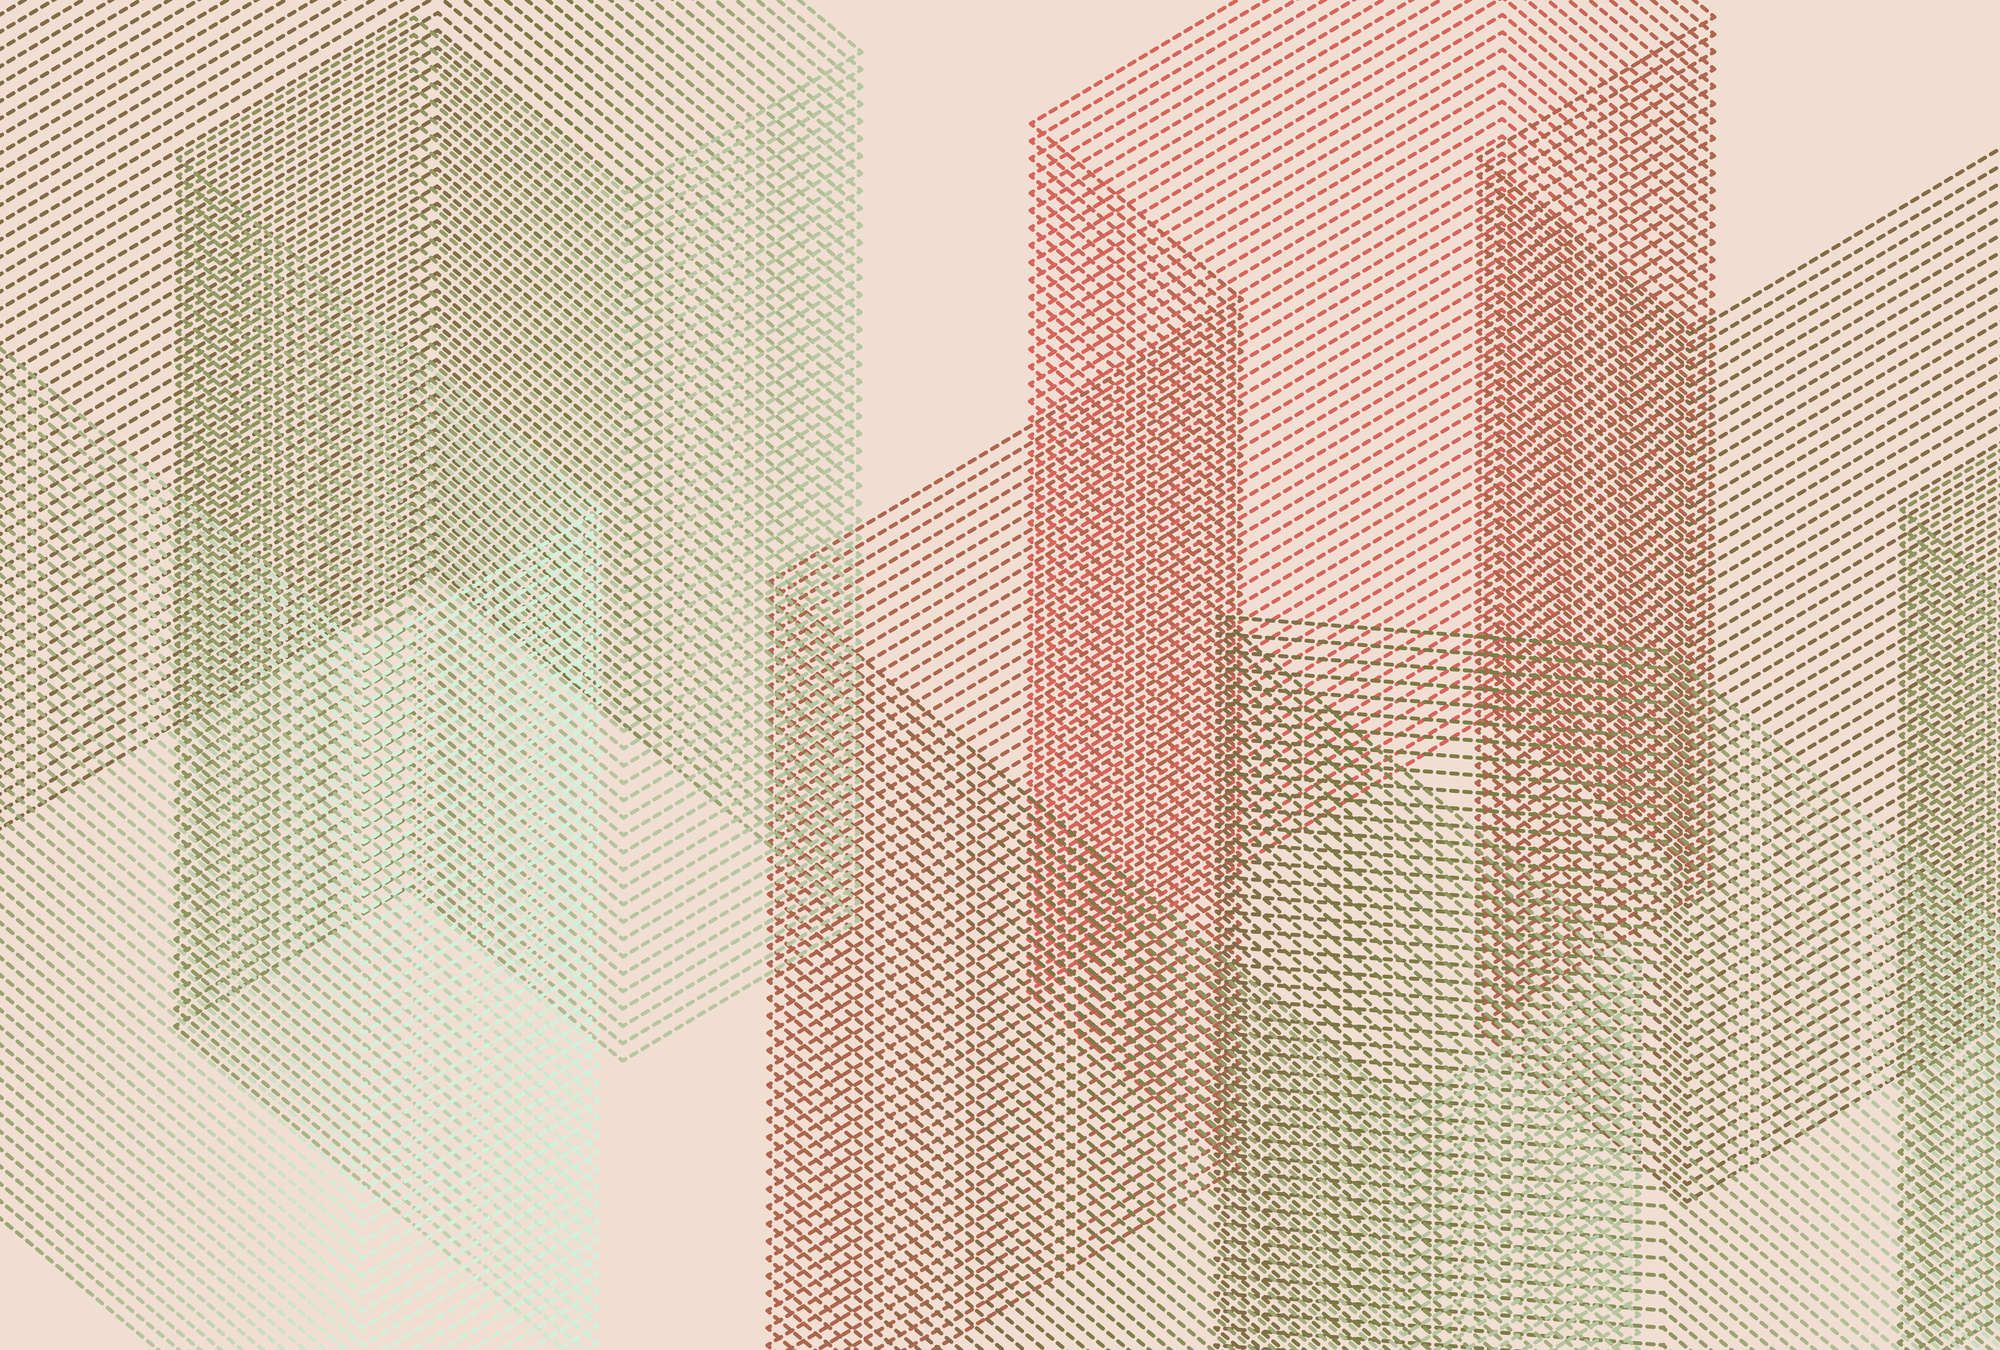             Digital behang »mesh 2« - Abstract 3D ontwerp - Rood, Groen | Licht structuurvlies
        